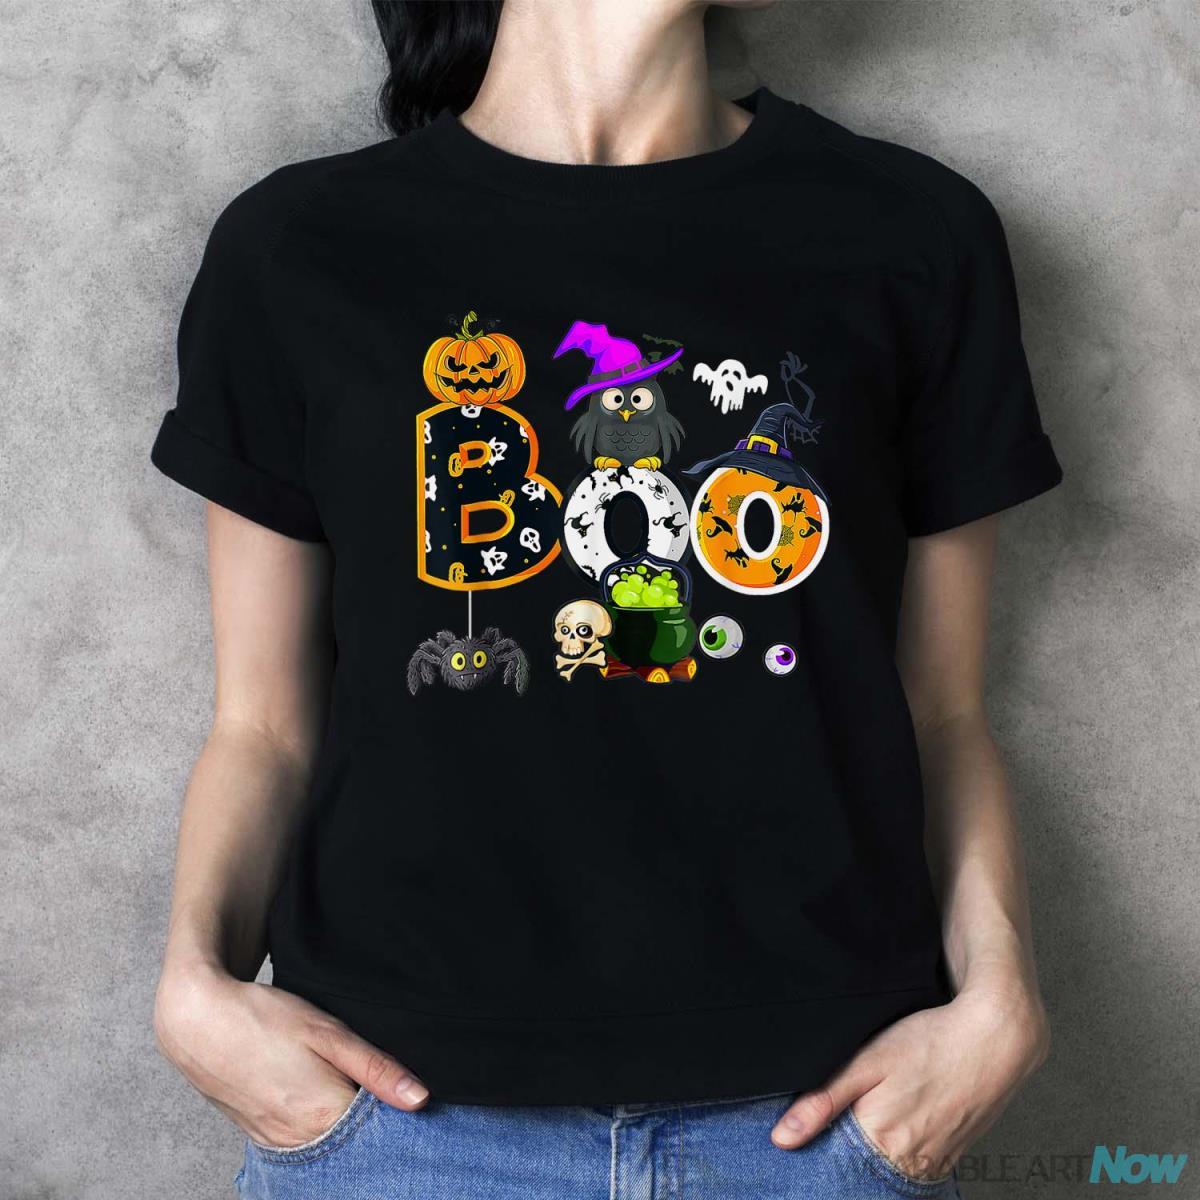 Boo Creepy Owl Pumpkin Ghost Halloween Men Women Kids Shirt - Ladies T-Shirt